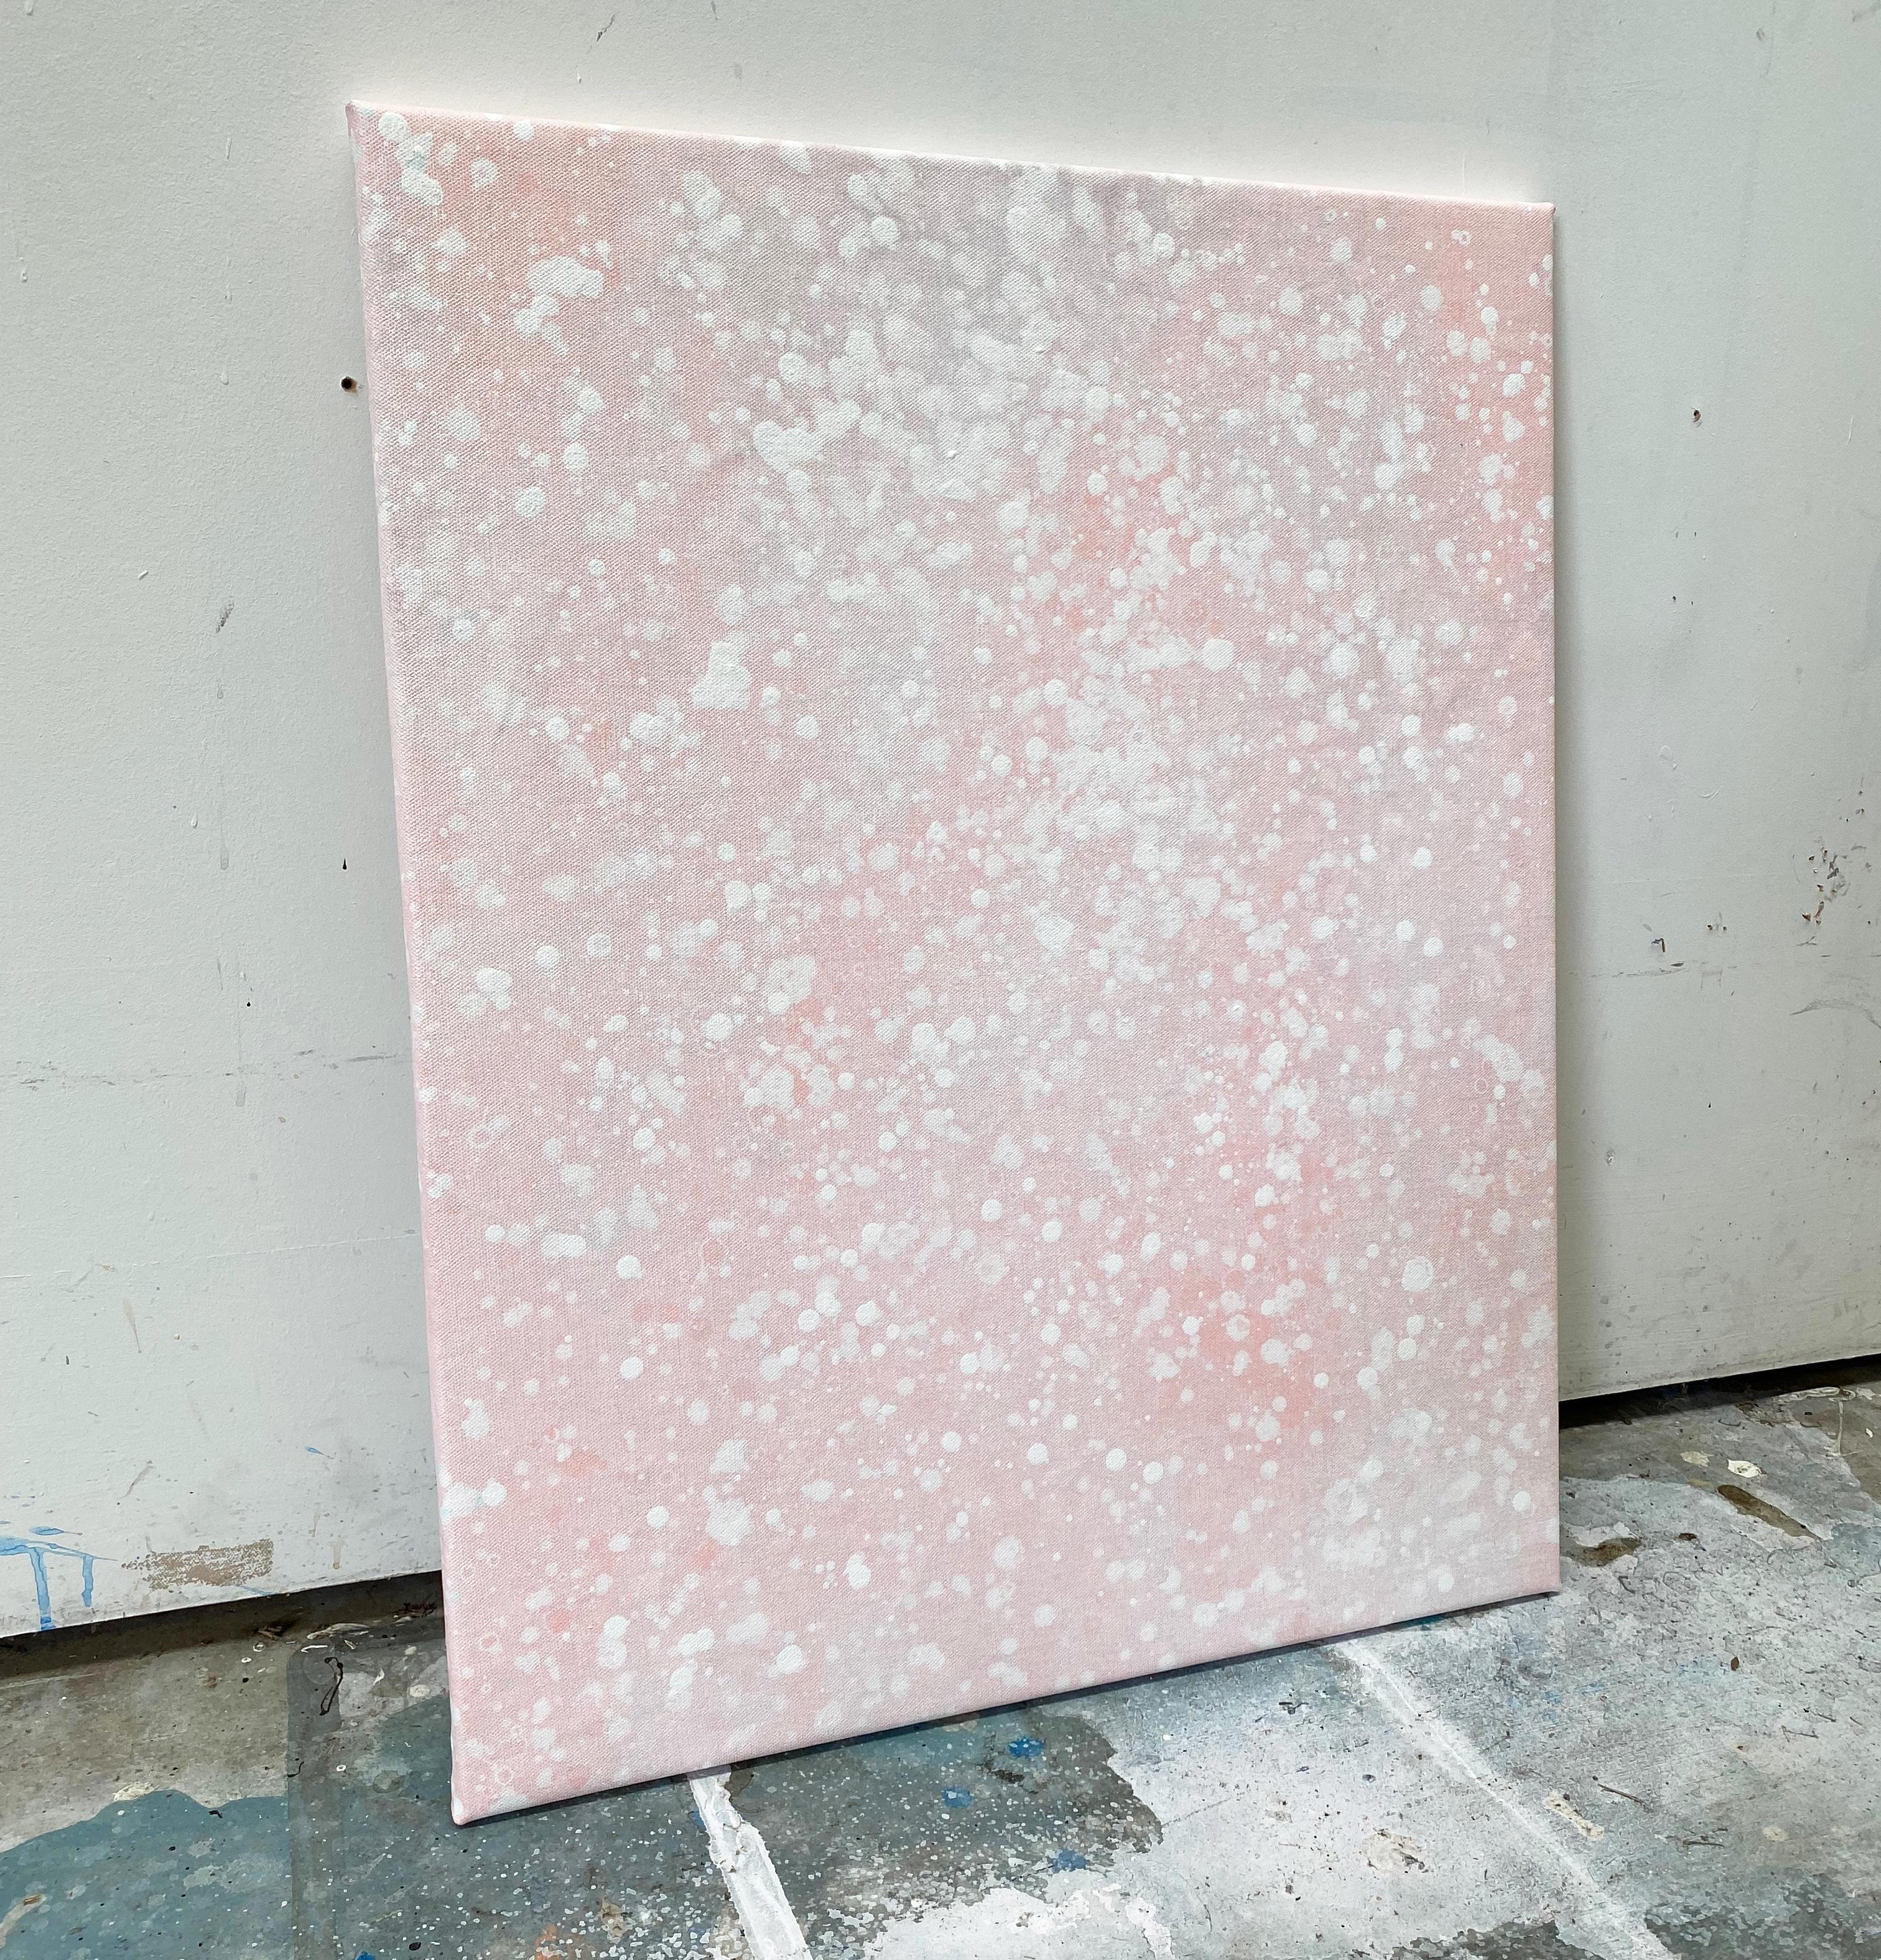 Seine Schneewittchen-Pastell hellrosa Punkt abstrakte minimalistische expressionistische moderne Malerei (Grau), Abstract Painting, von Kathleen Rhee